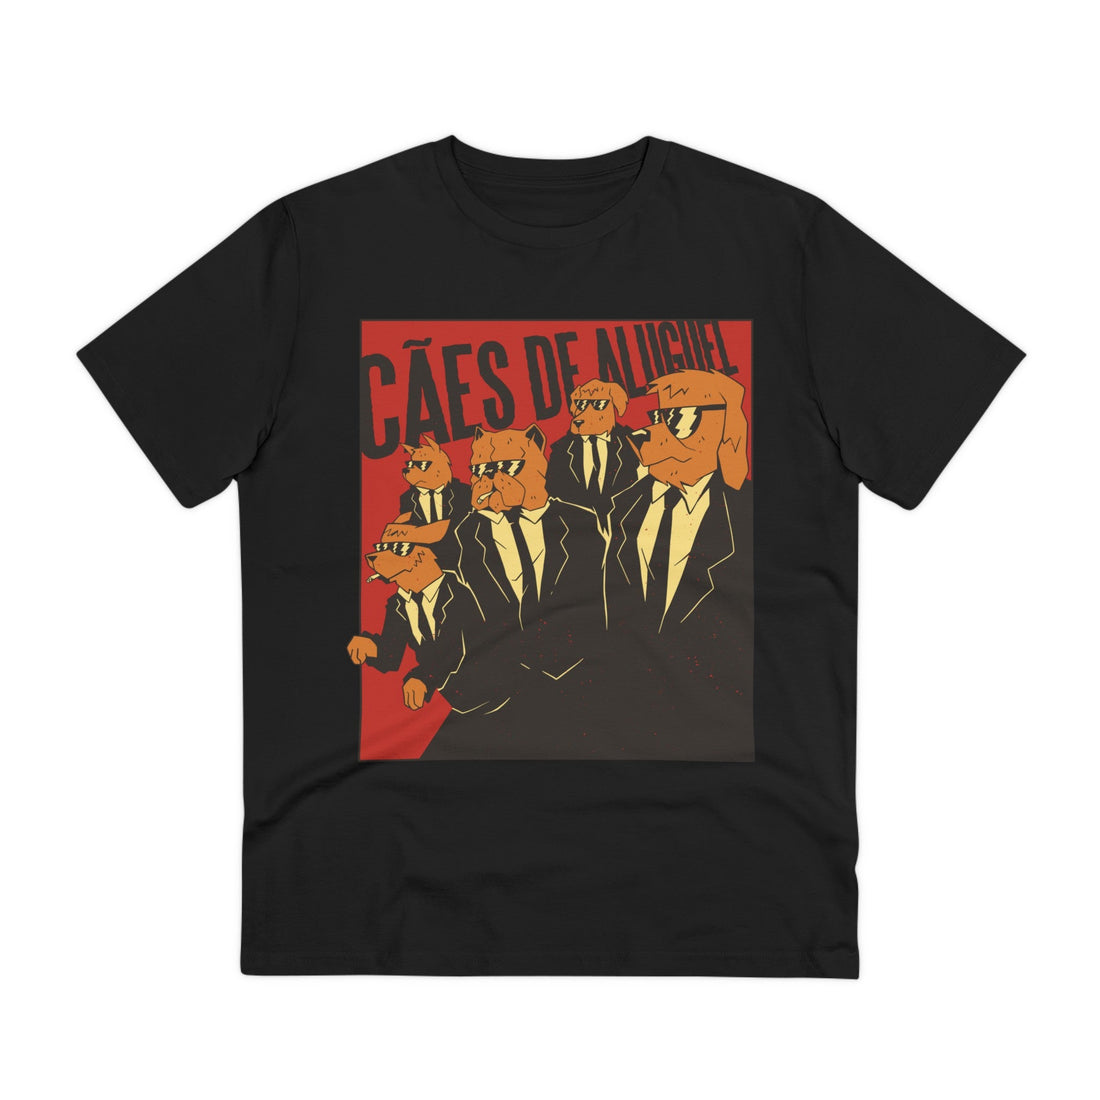 Printify T-Shirt Black / 2XS Caes de Aluguel - Film Parodie - Front Design